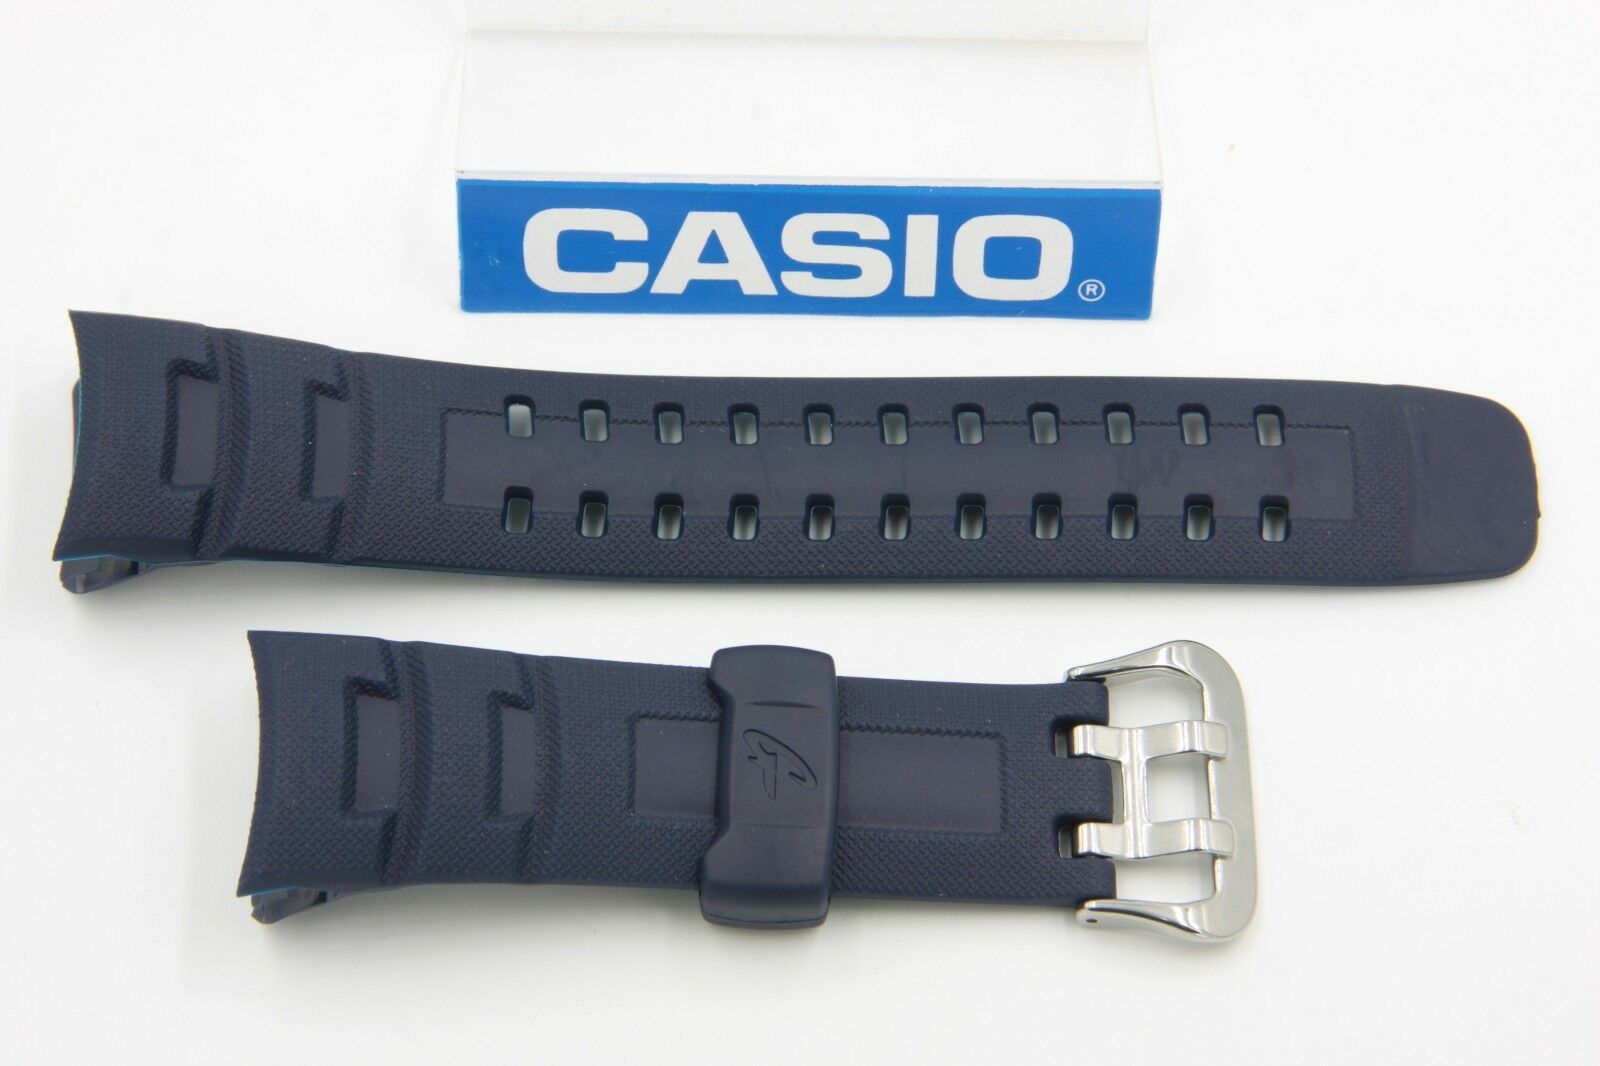 Casio Original G-Shock Watch Band G-7600-2 Blue G-Shock Strap Watchband G-7600